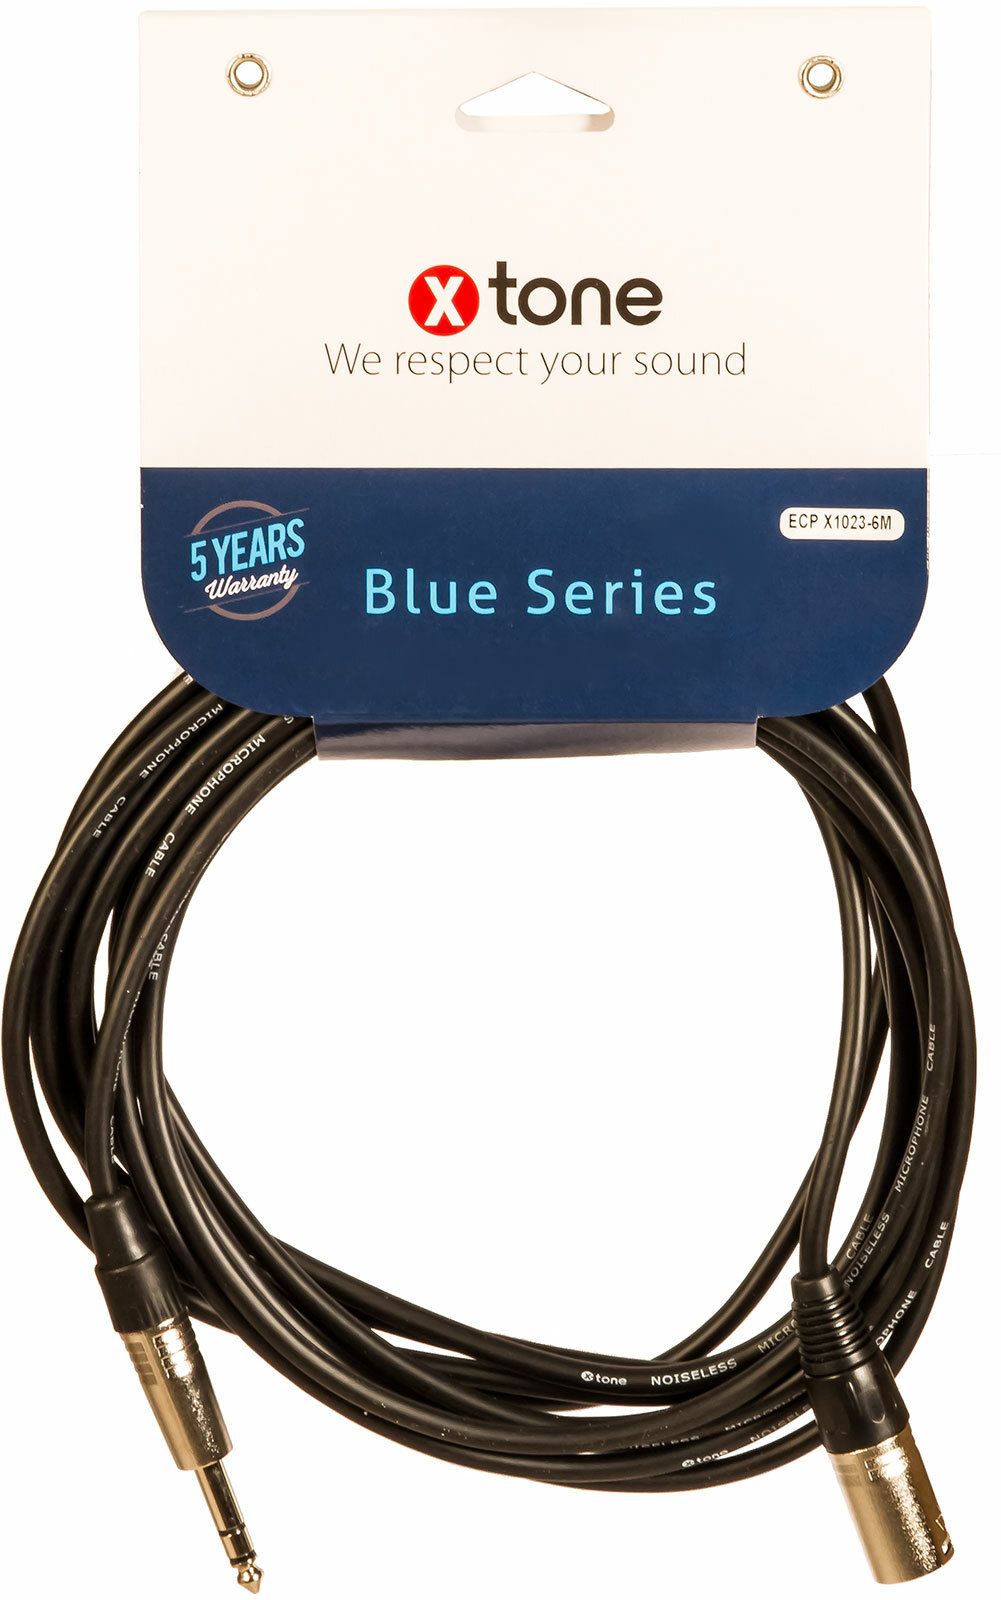 X-tone Jack St / Xlr(m) 6m Blue Series (x1023-6m) - Cable - Main picture